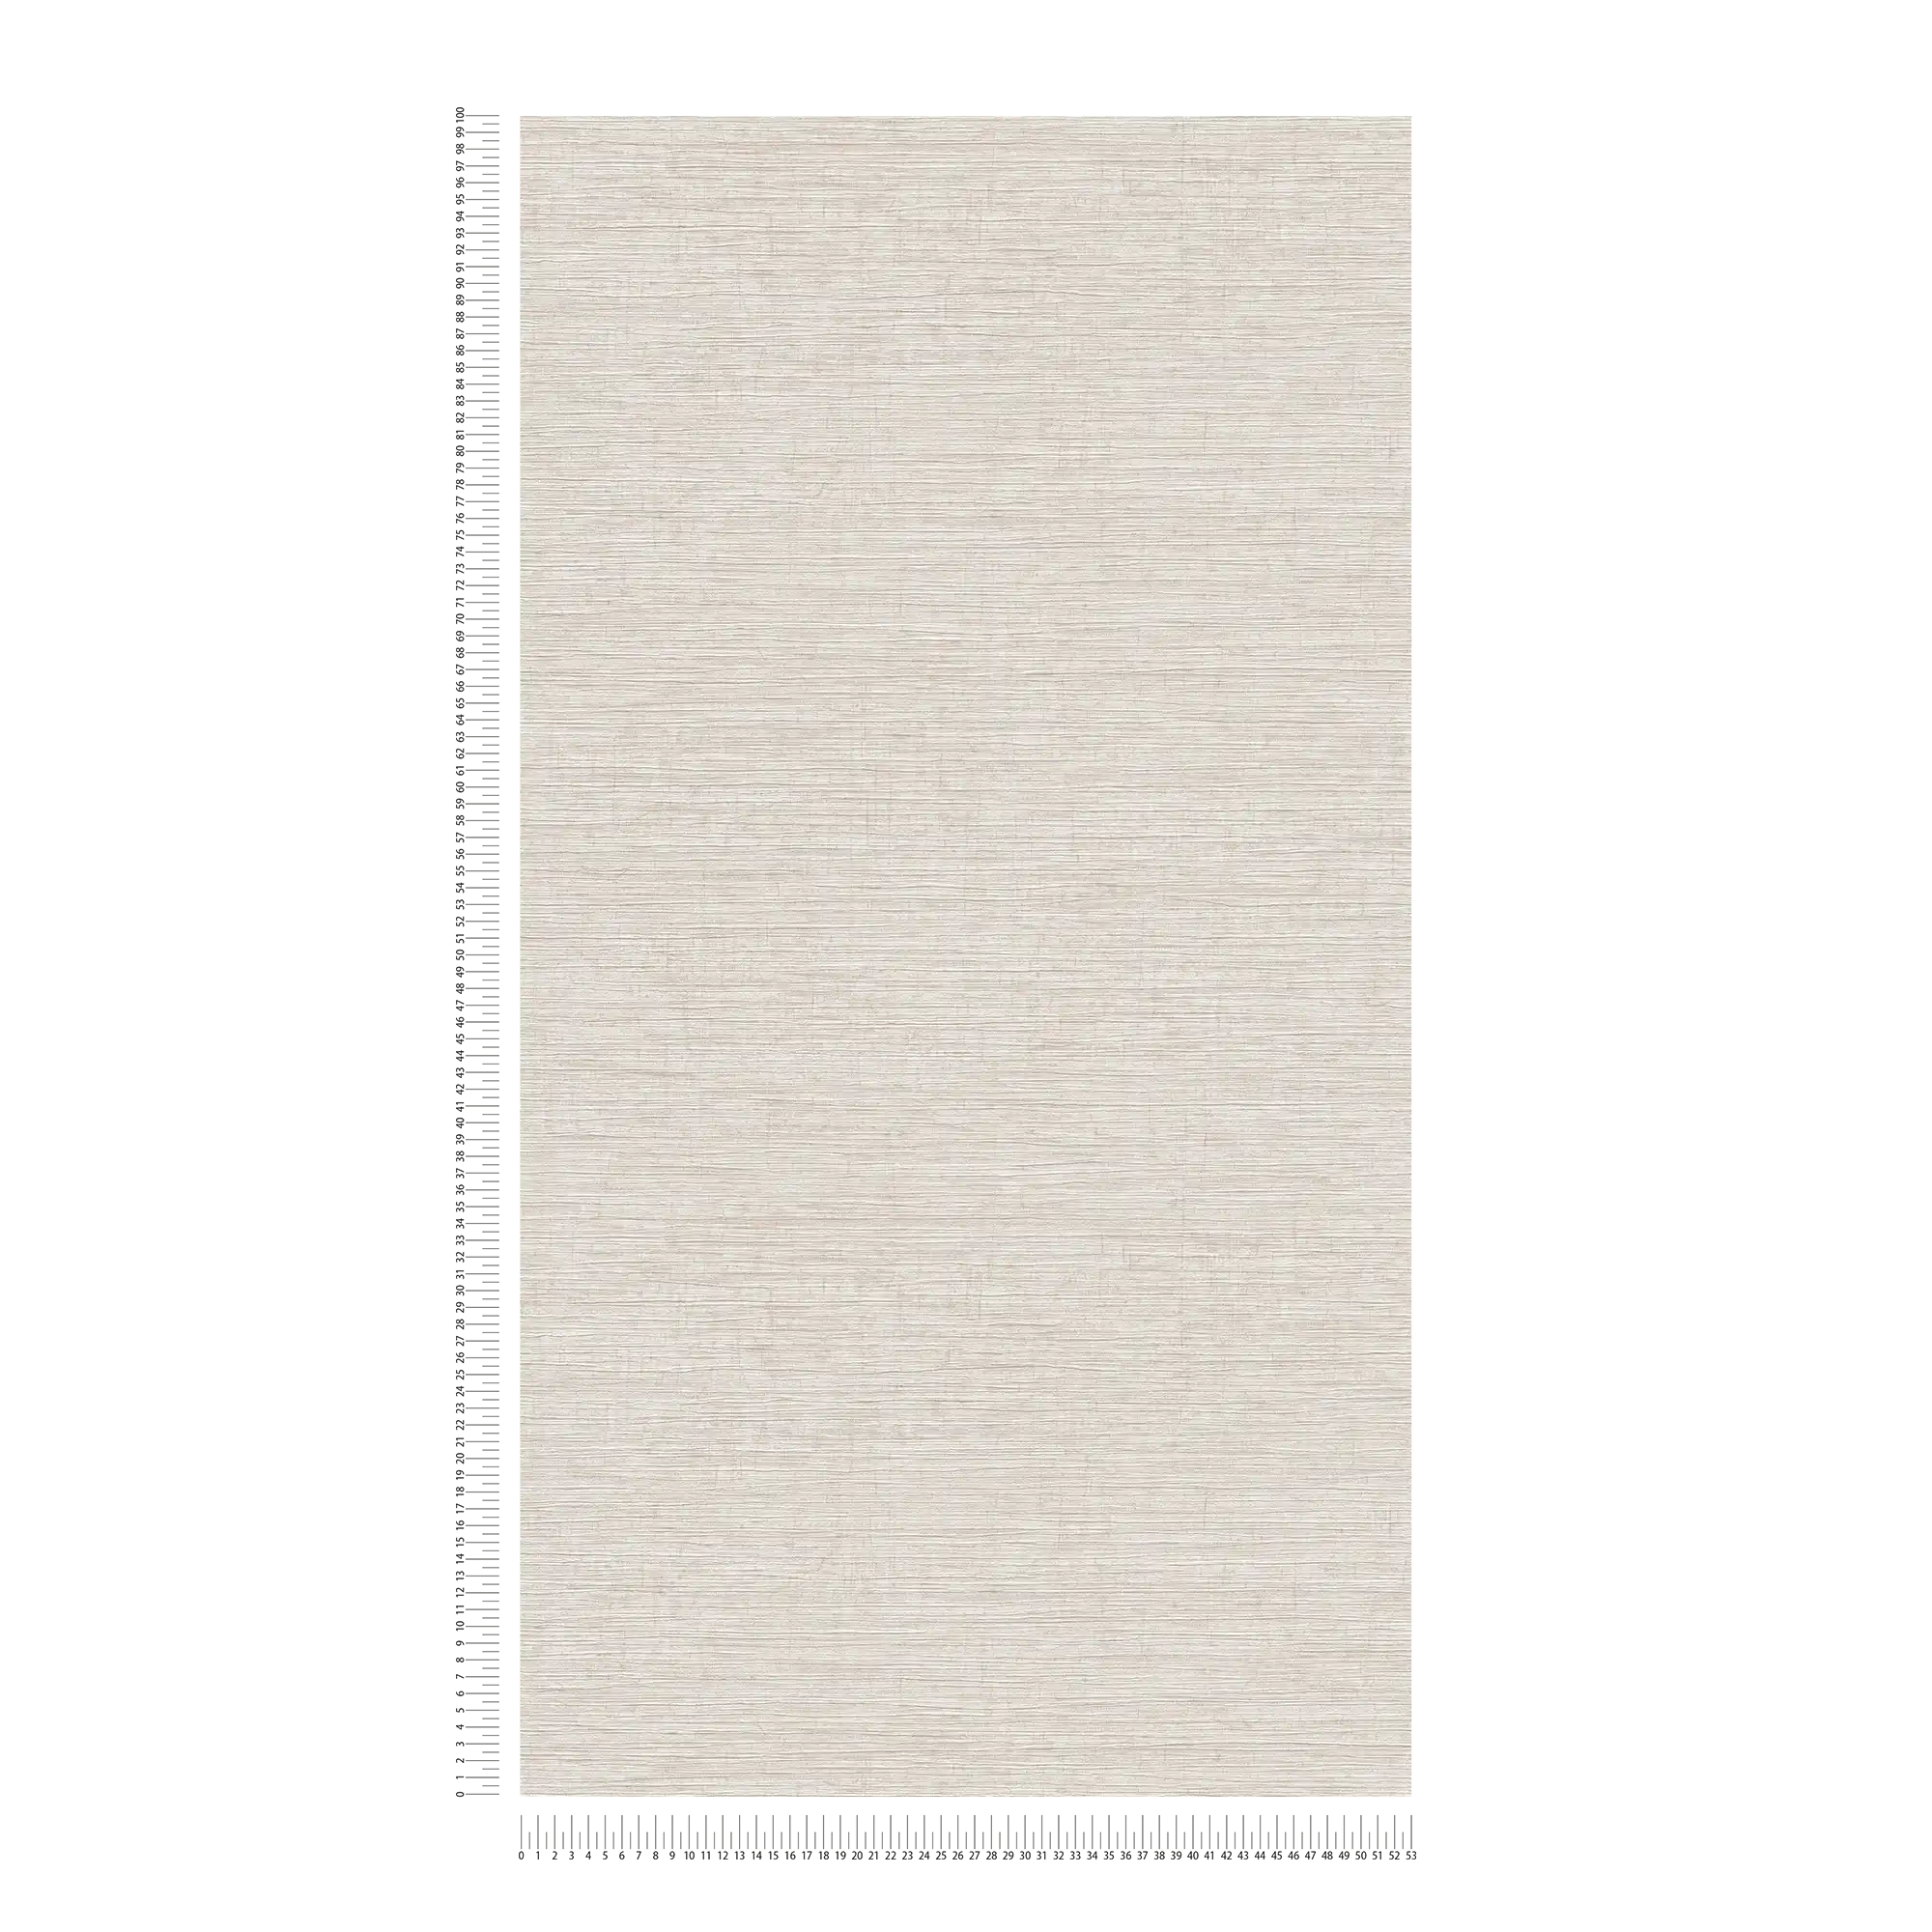             Papel pintado no tejido moteado con relieve textil - beige, marrón, gris
        